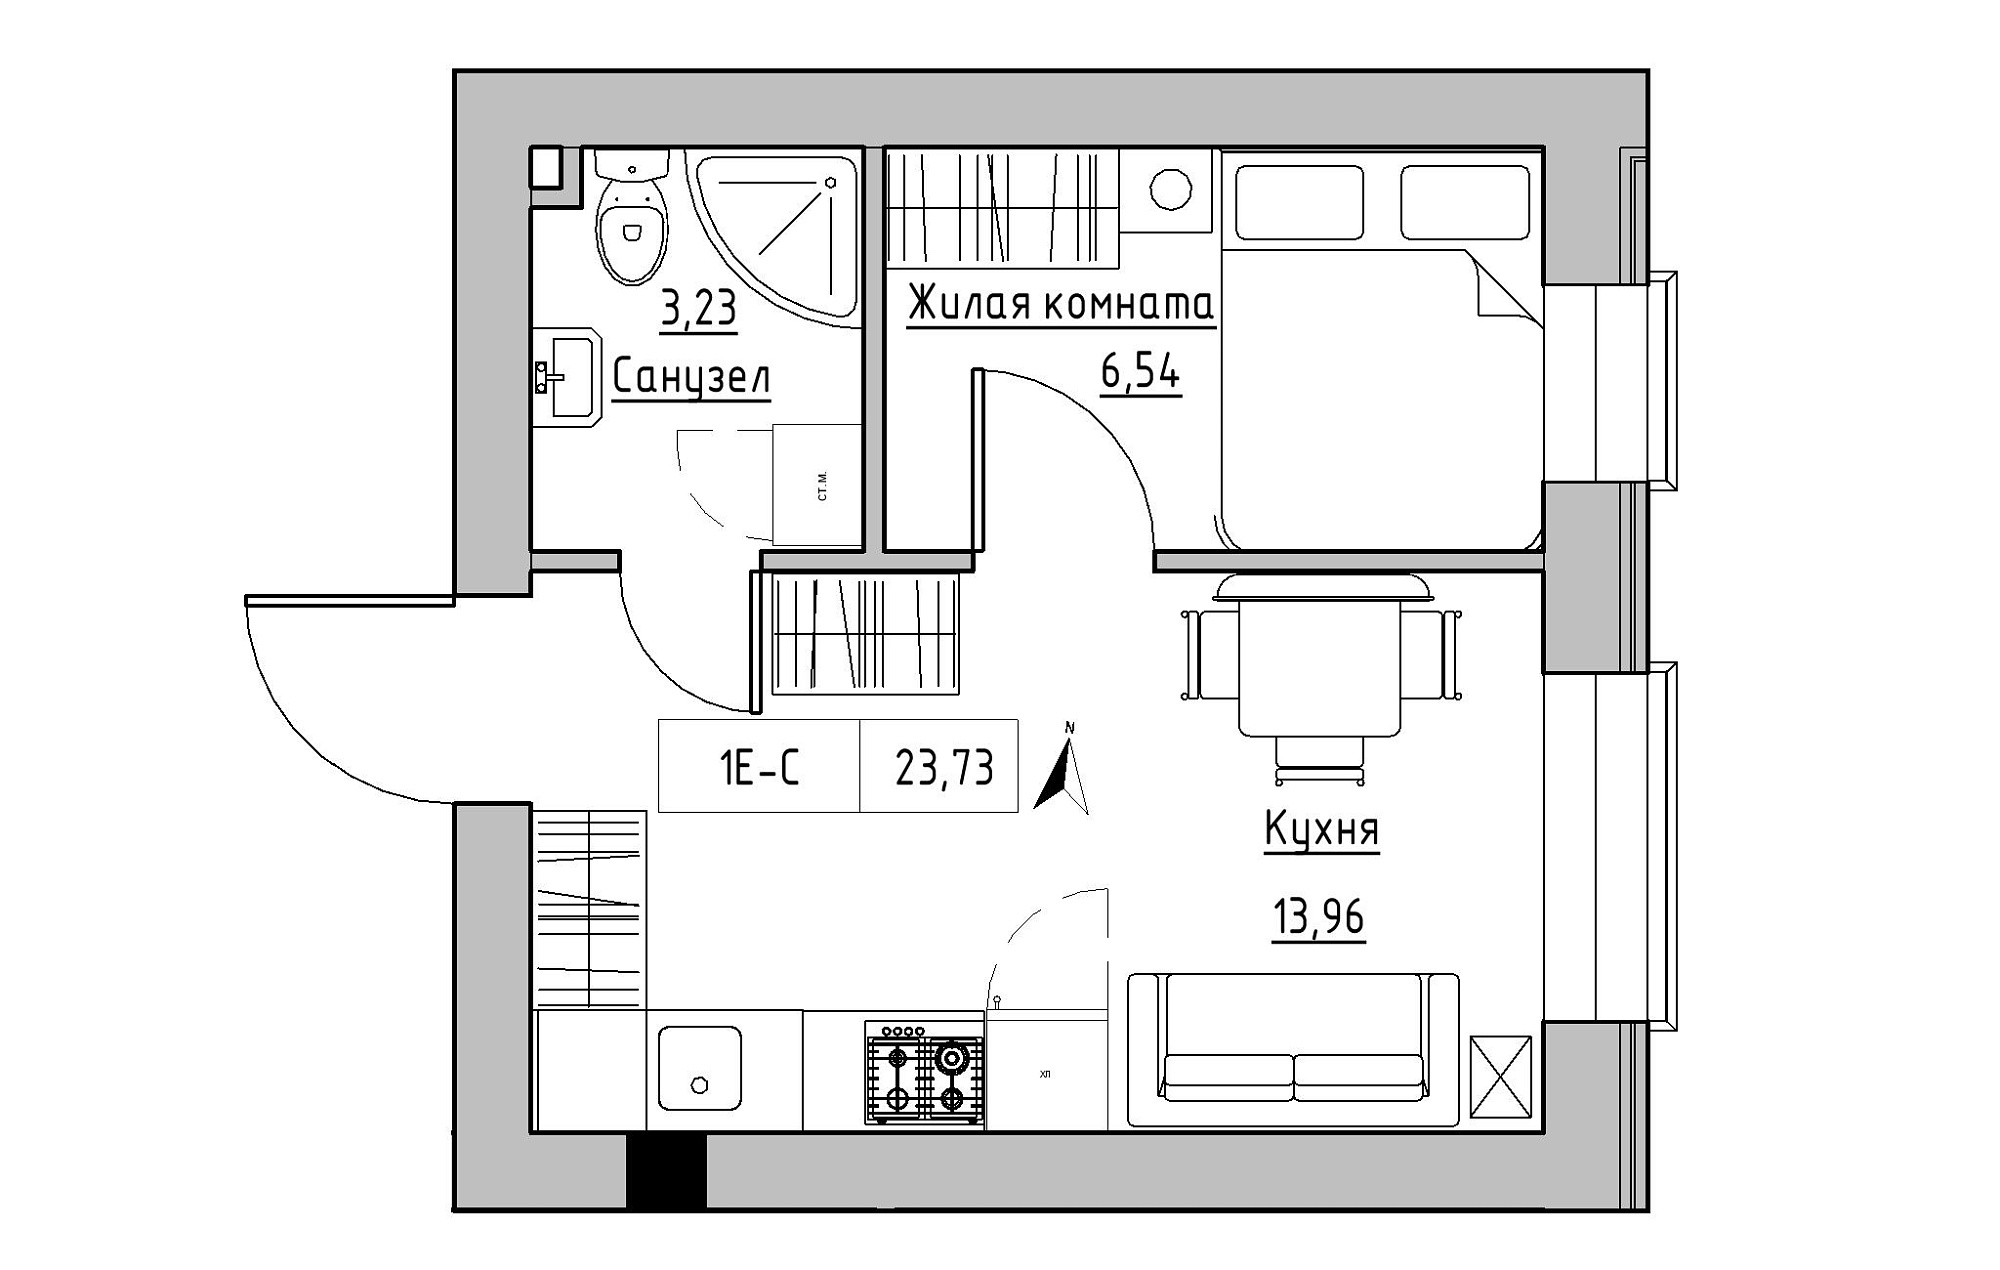 Планировка 1-к квартира площей 23.73м2, KS-019-01/0007.